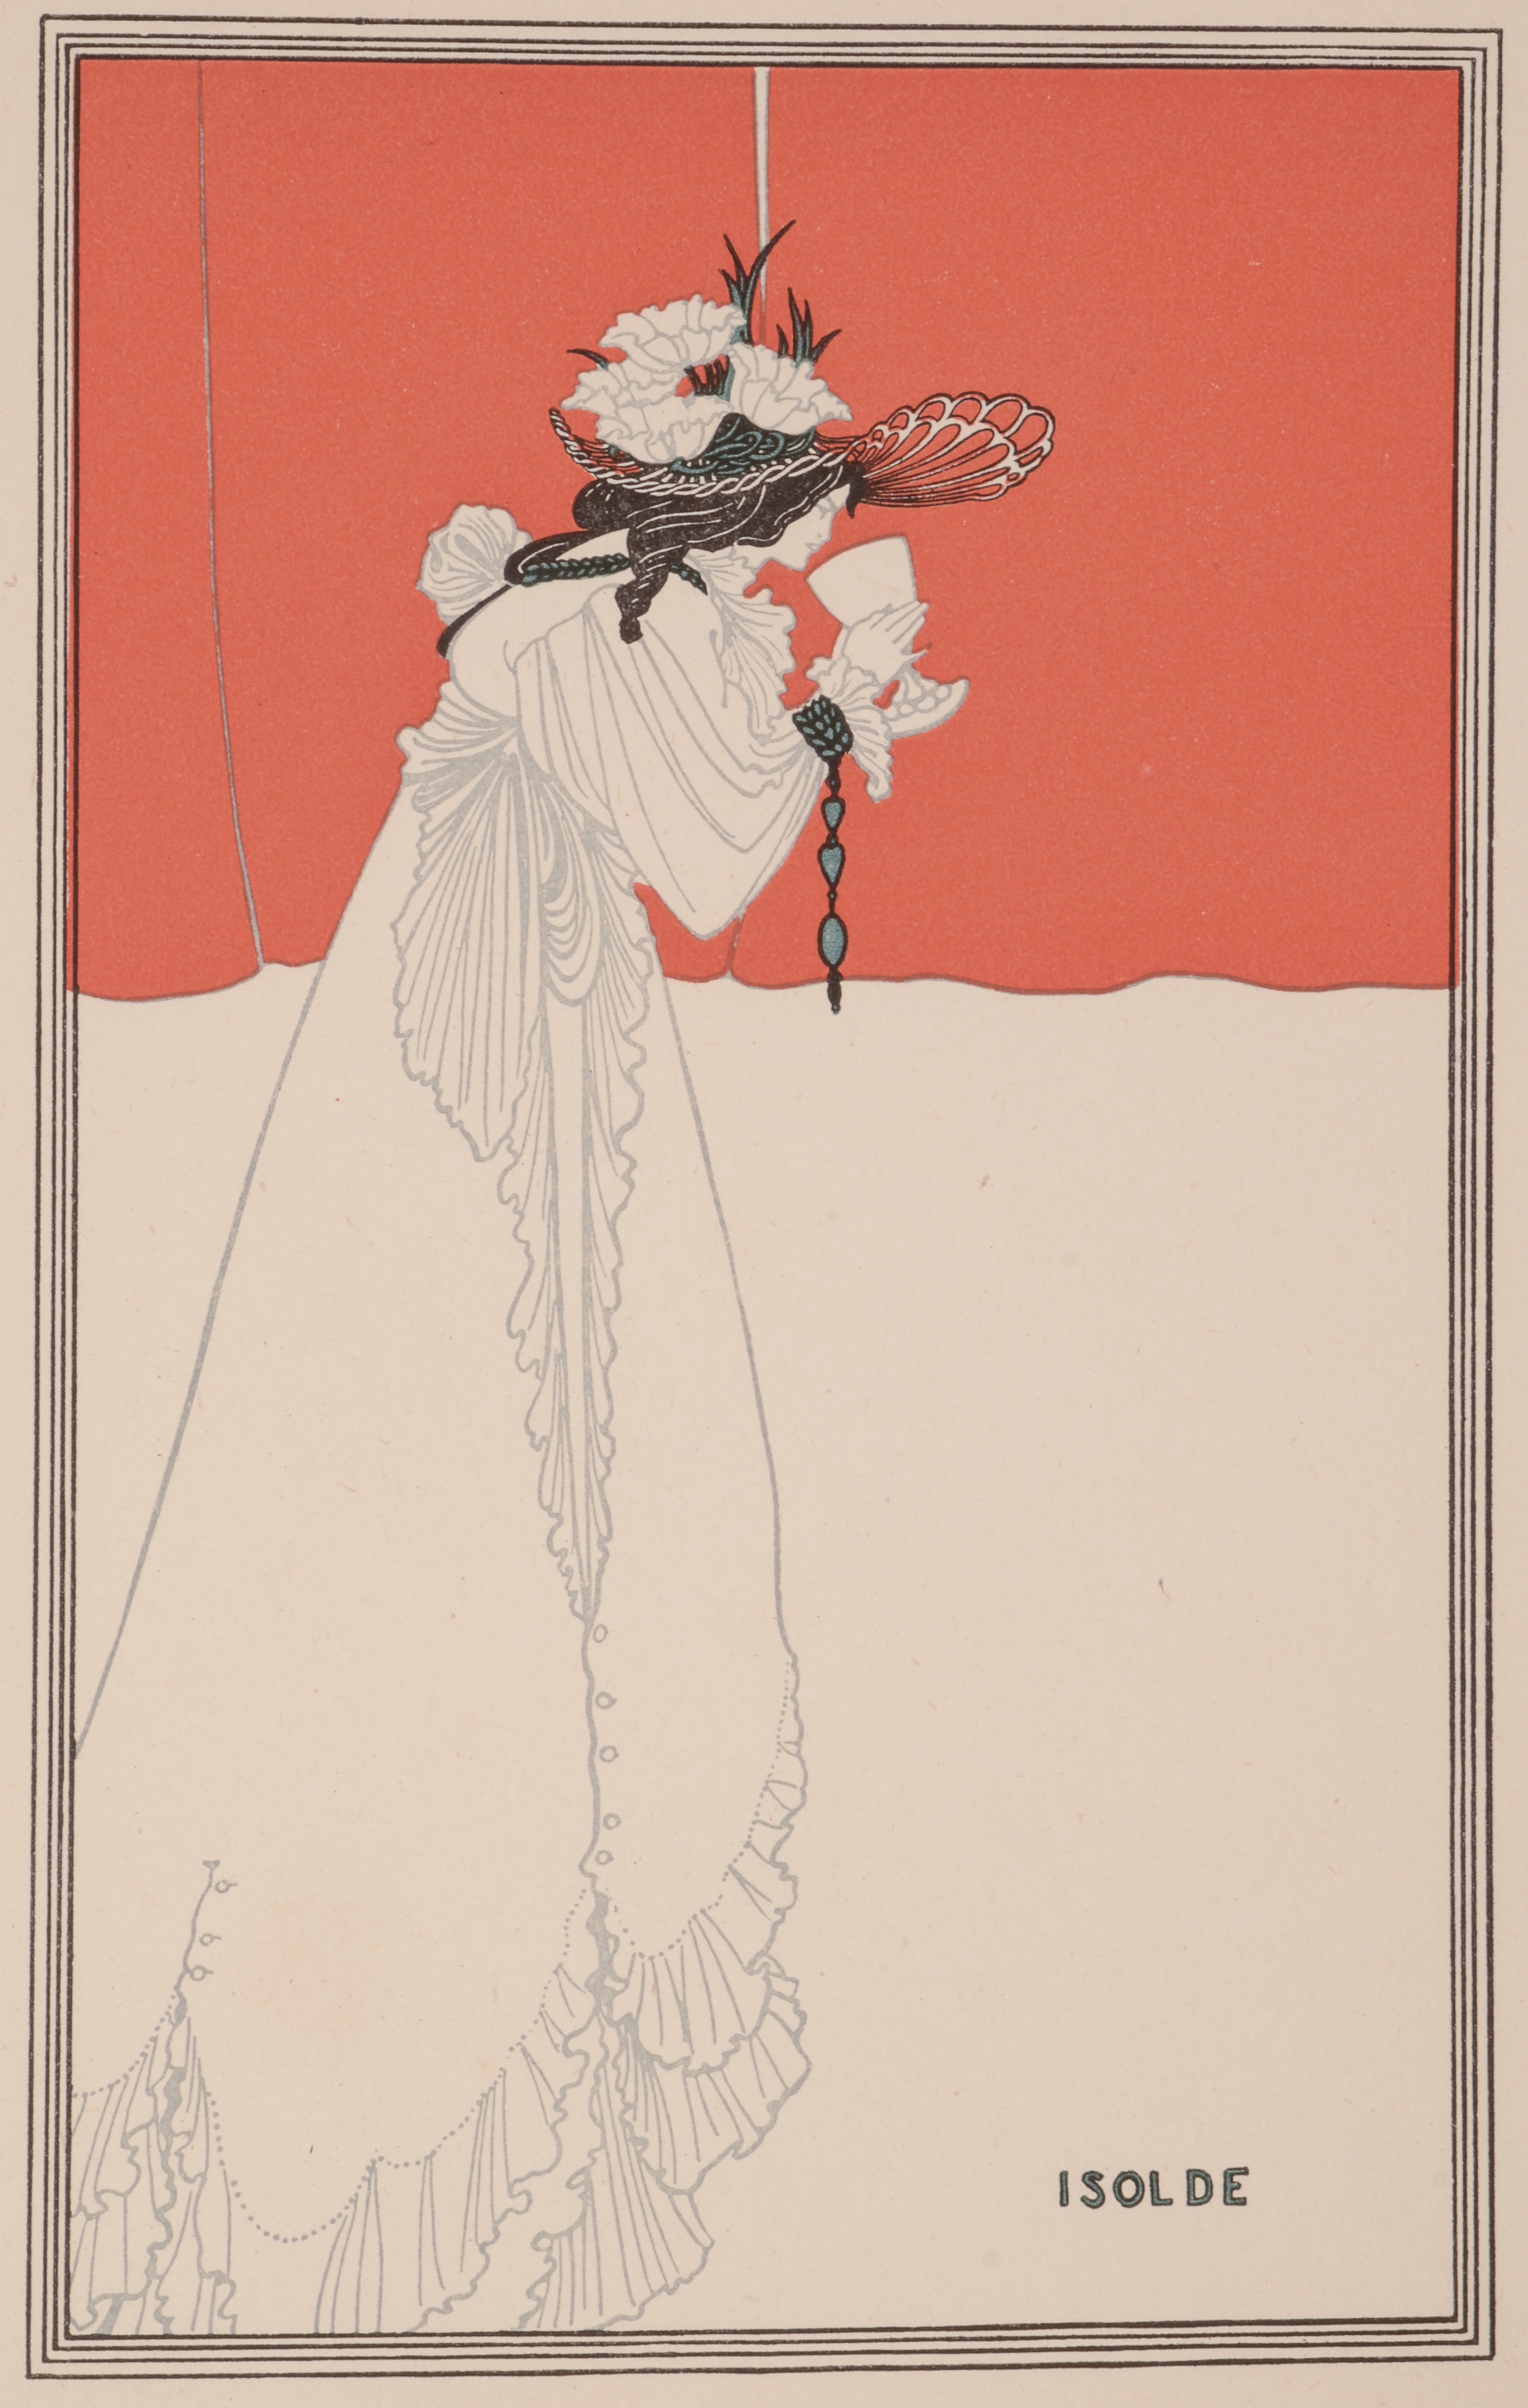 イゾルデ by Aubrey Beardsley - 1898 - 28 x 17 cm 